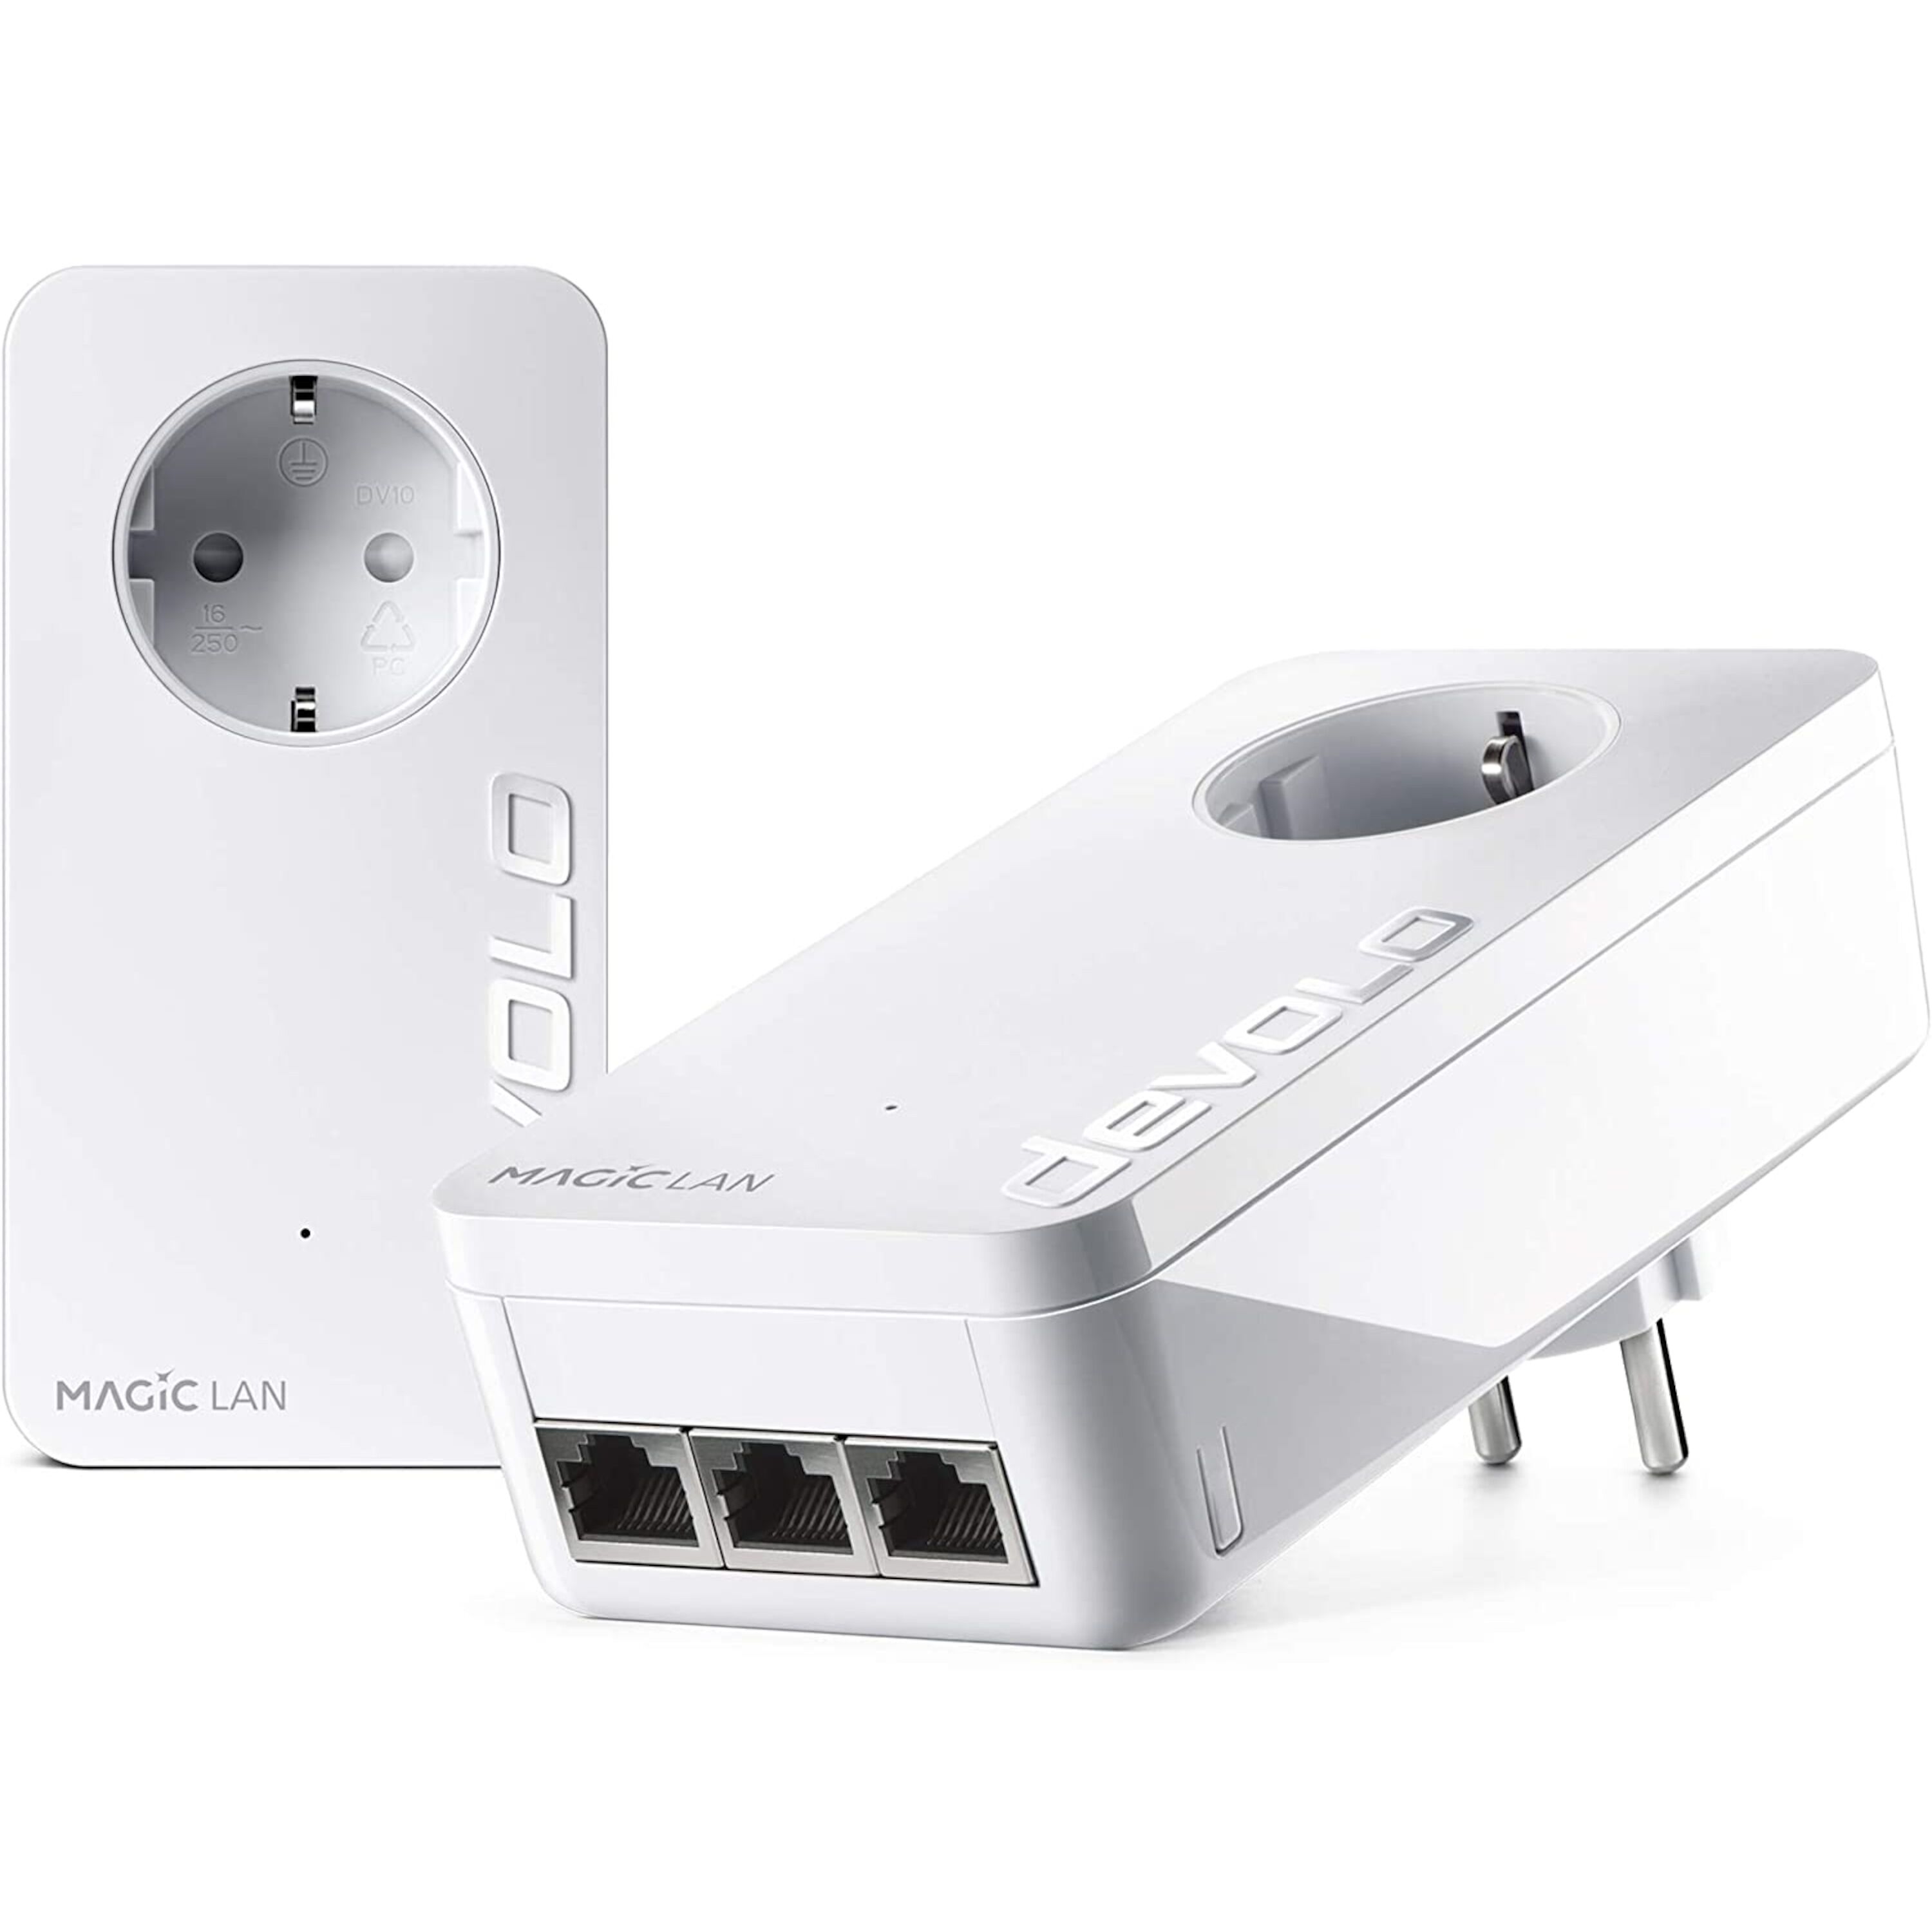 DEVOLO Devolo Magic 2 LAN Starter Kit MD 88441  2400 Mbit/s  3 Gigabit LAN poorten  Tot 500 meter  Contactdoos met kinderslot